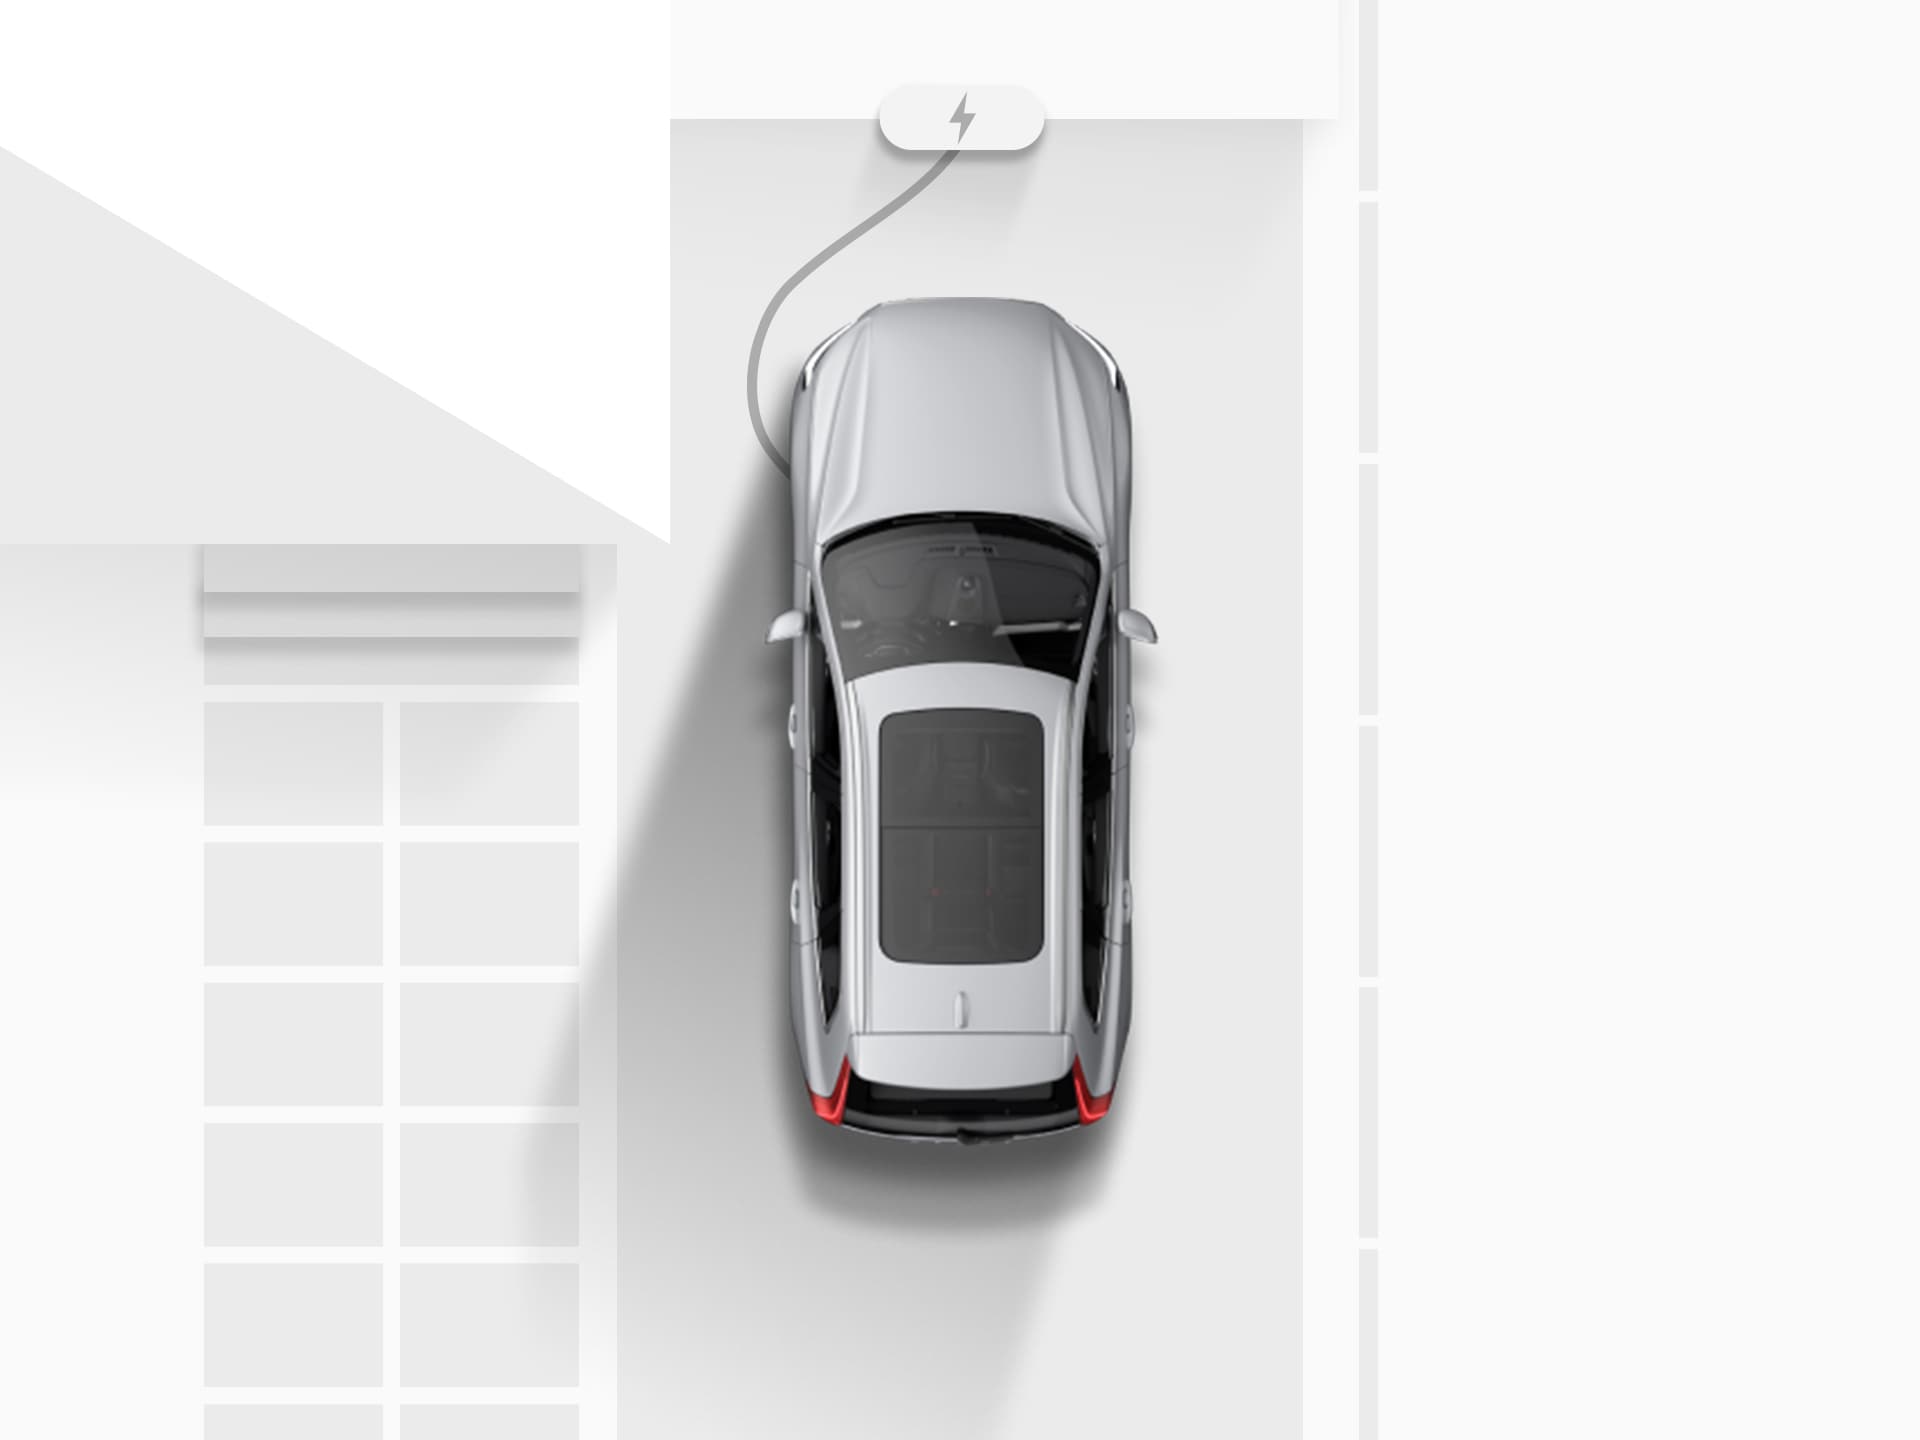 Digitāla attēla skats no augšas uz sudraba krāsas Volvo XC40 Recharge pilnība elektrisko apvidus automašīnu, kas pievienota strāvas padevei un tiek lādēta mājas piebraucamajā ceļā.